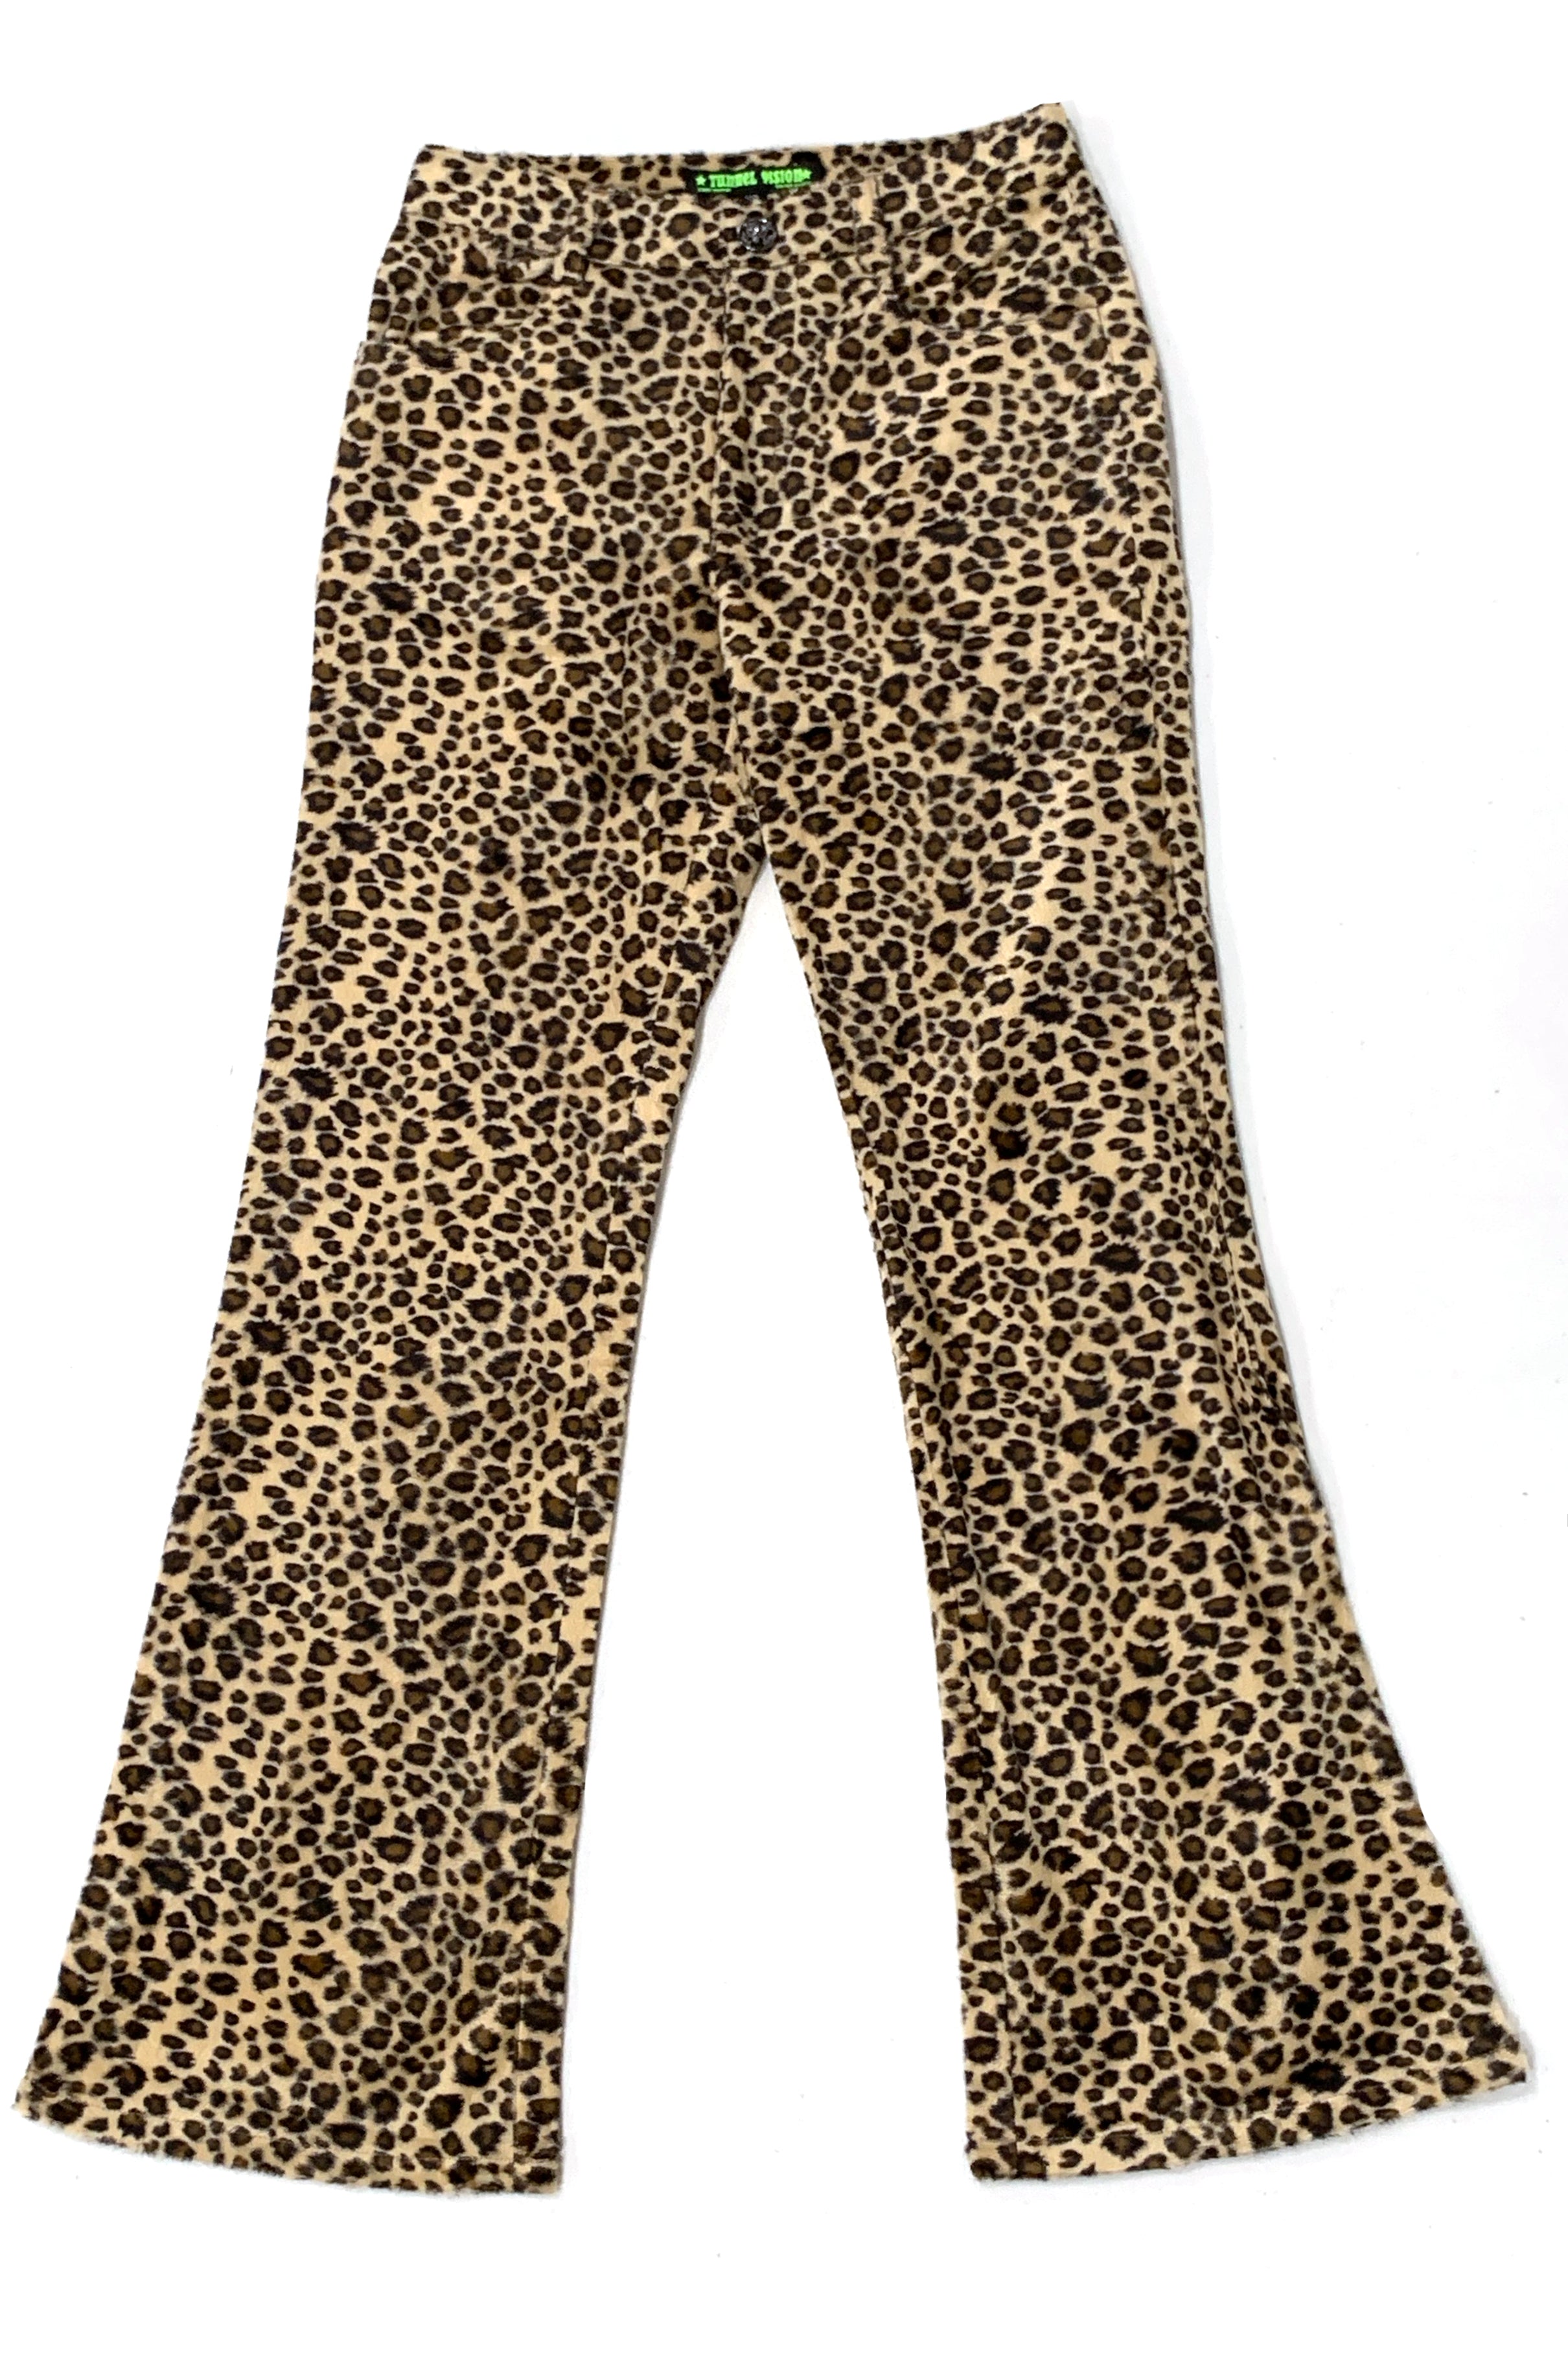 Kaia Gerber Wears GrungeInspired Leopard Print Pants